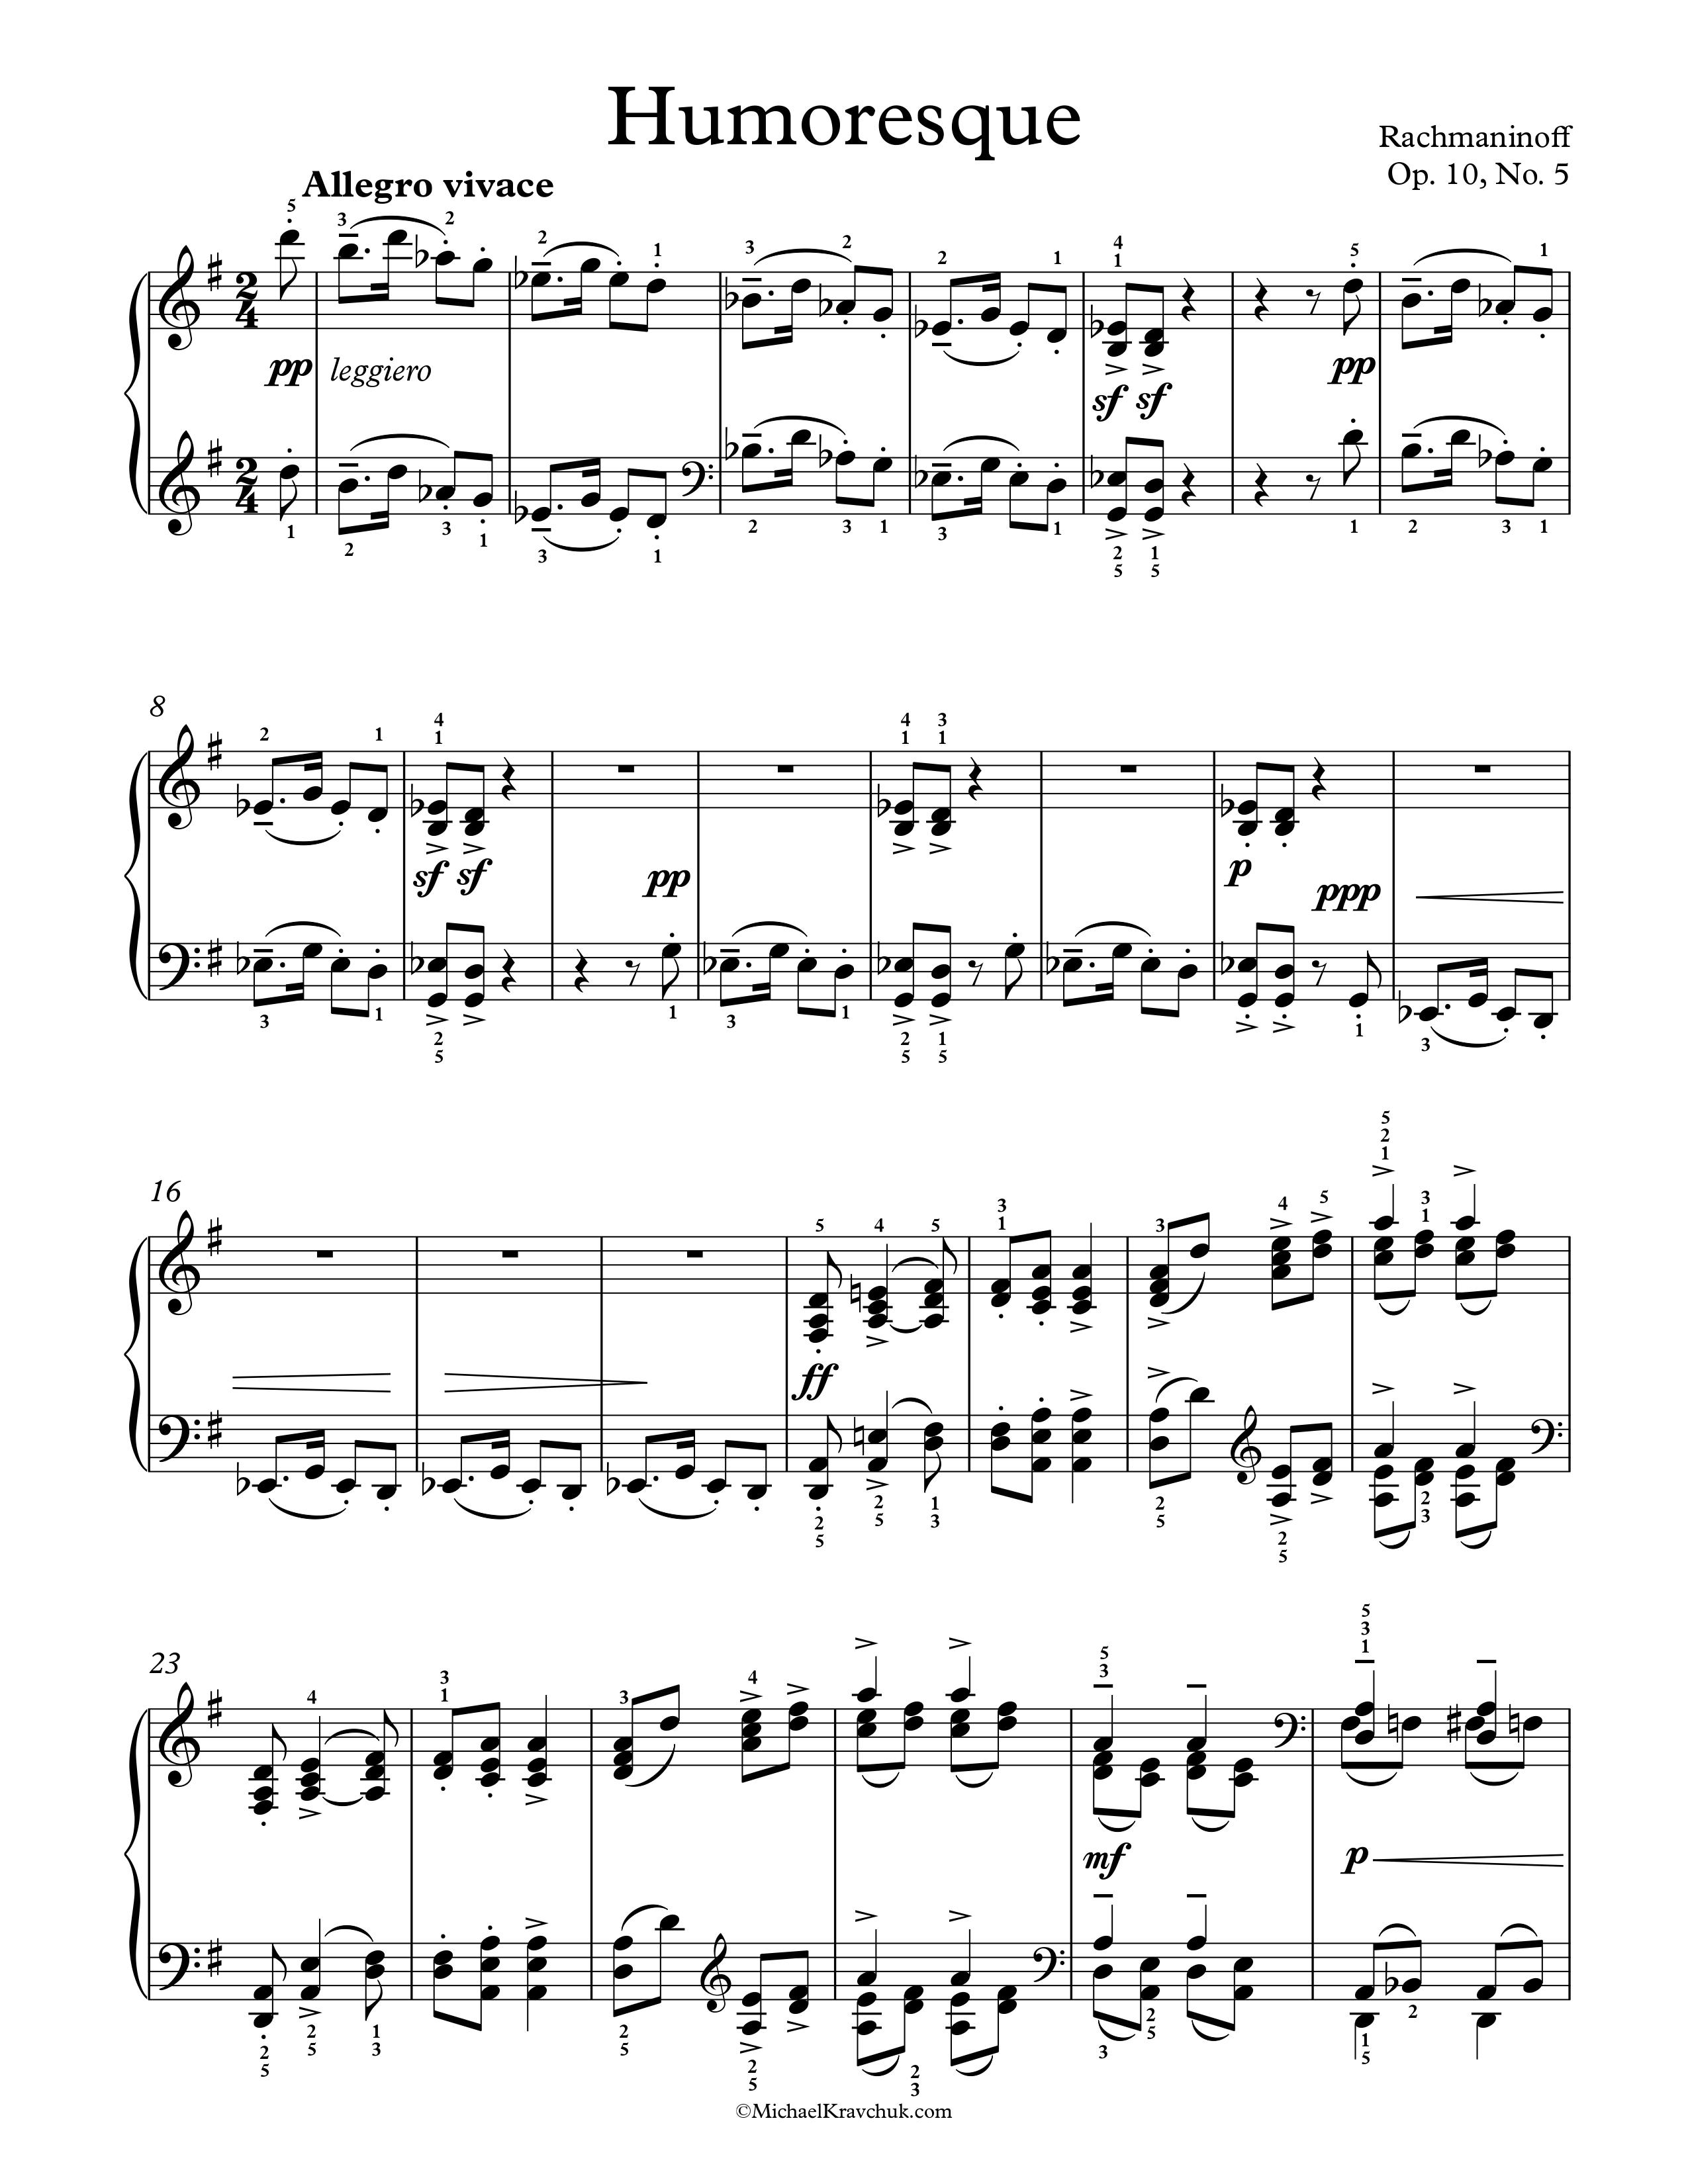 Free Piano Sheet Music - Humoresque Op. 10, No. 5 - Rachmaninoff